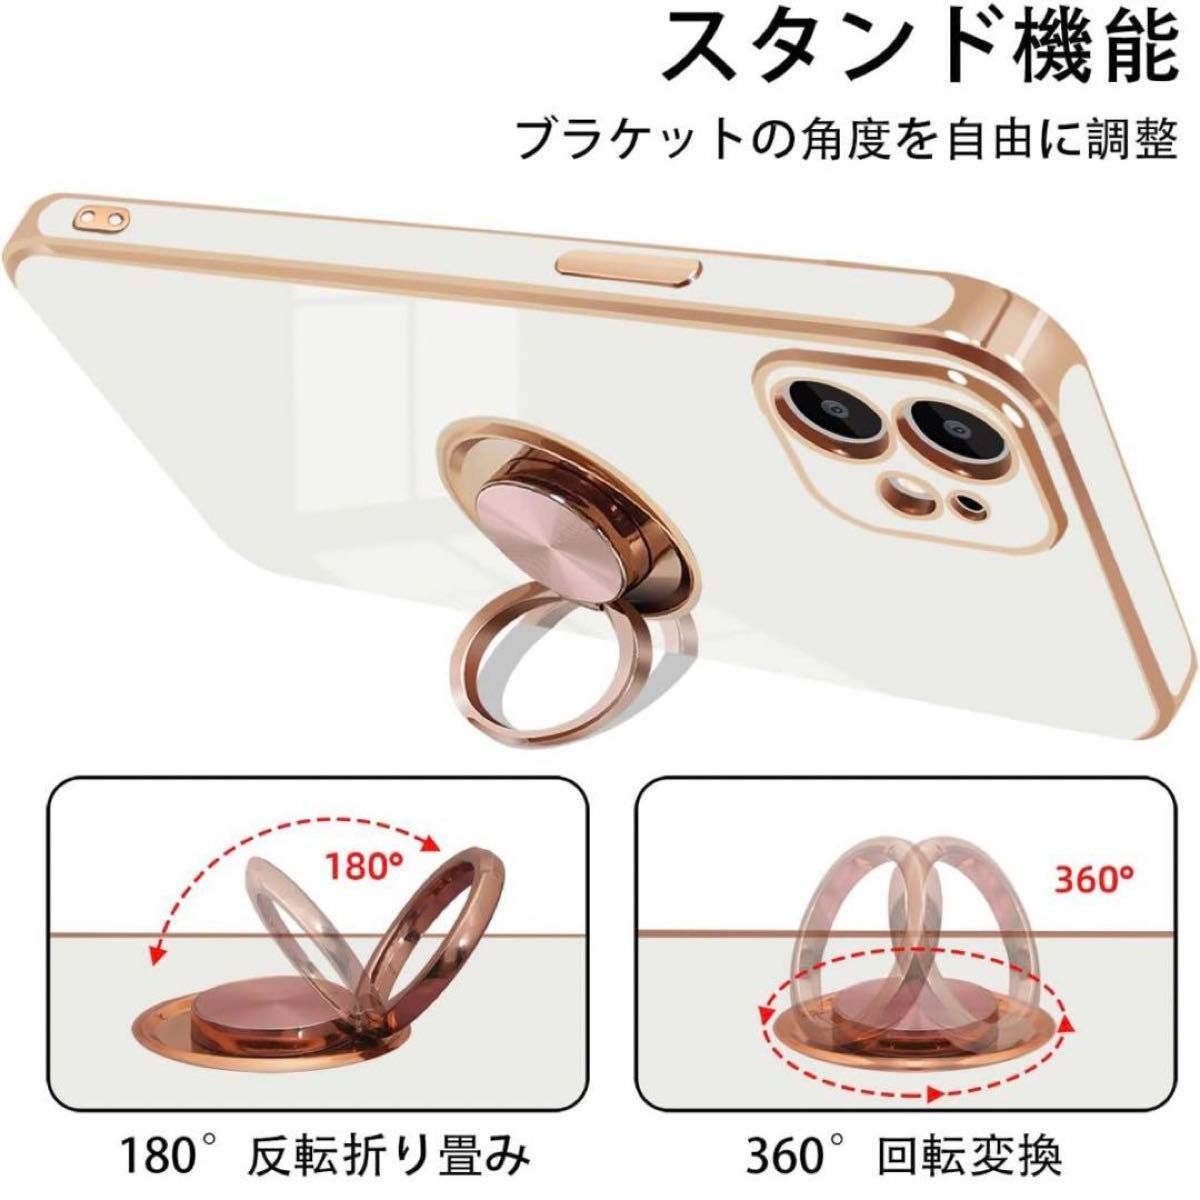 【ピンク】iPhone12 ケース リング付き 車載ホルダー対応 携帯カバー 360°回転 スタンド機能  カバー iPhone